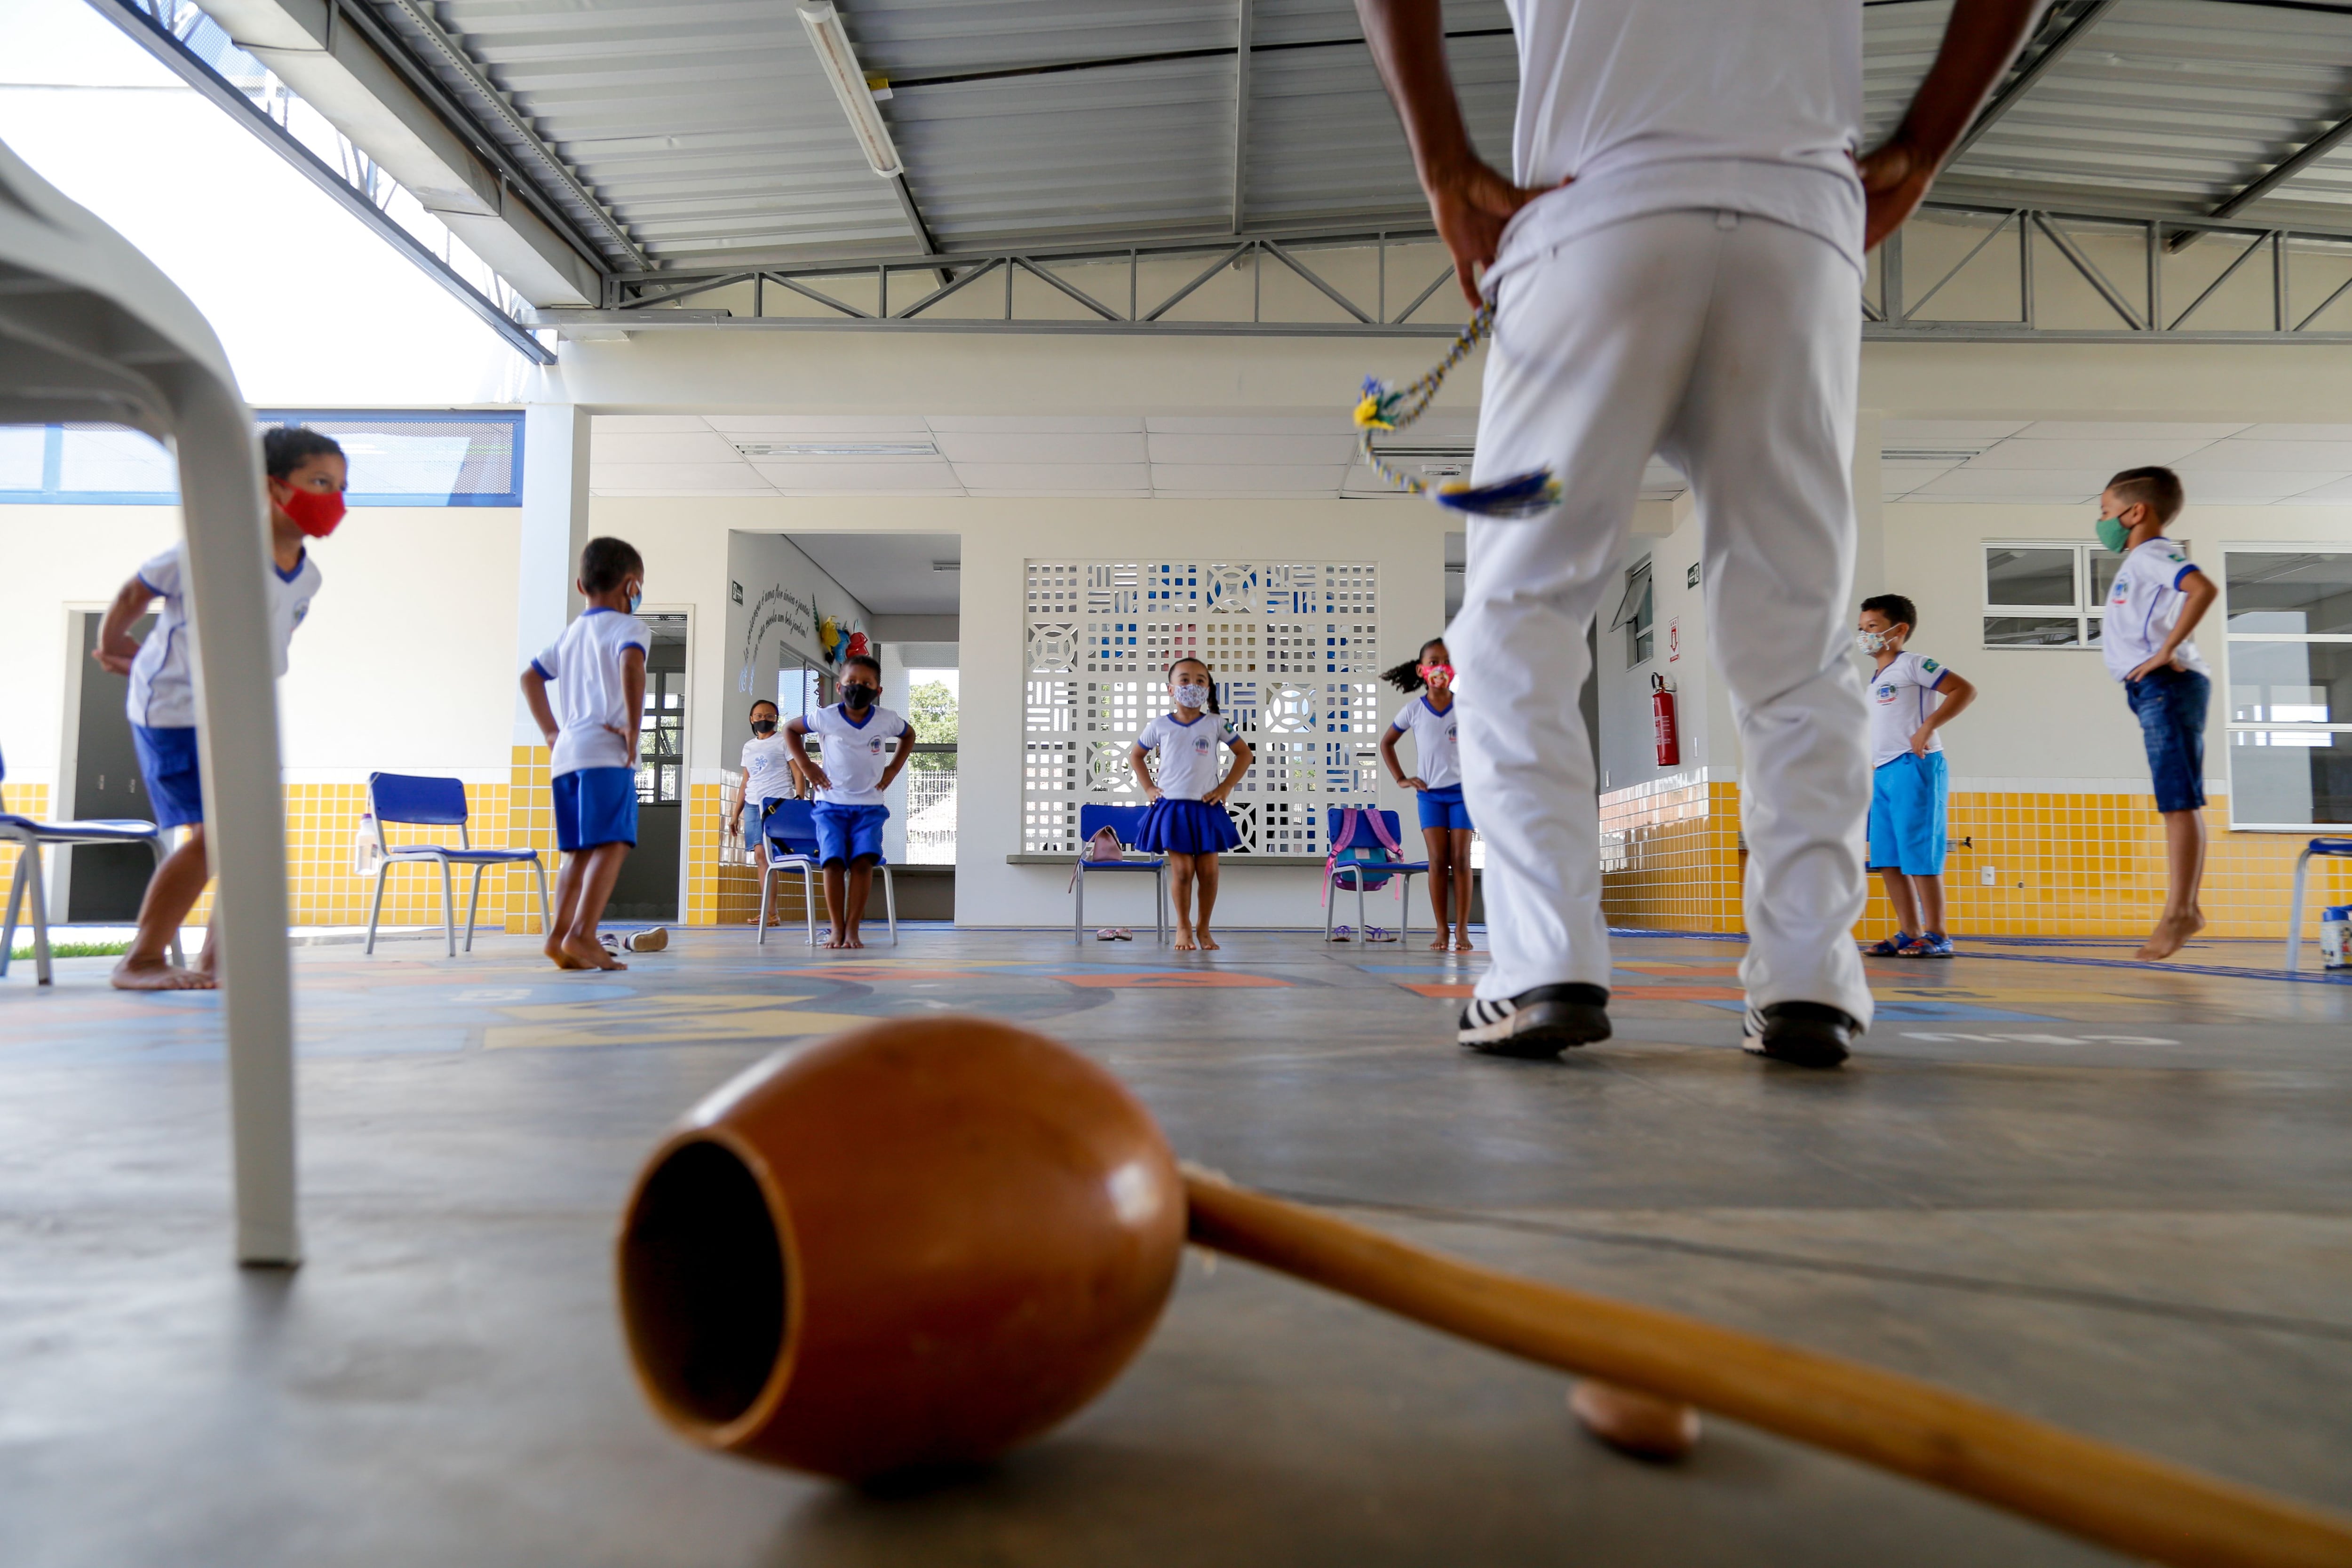 Núcleo de cultura volta às aulas presenciais em Oeiras.